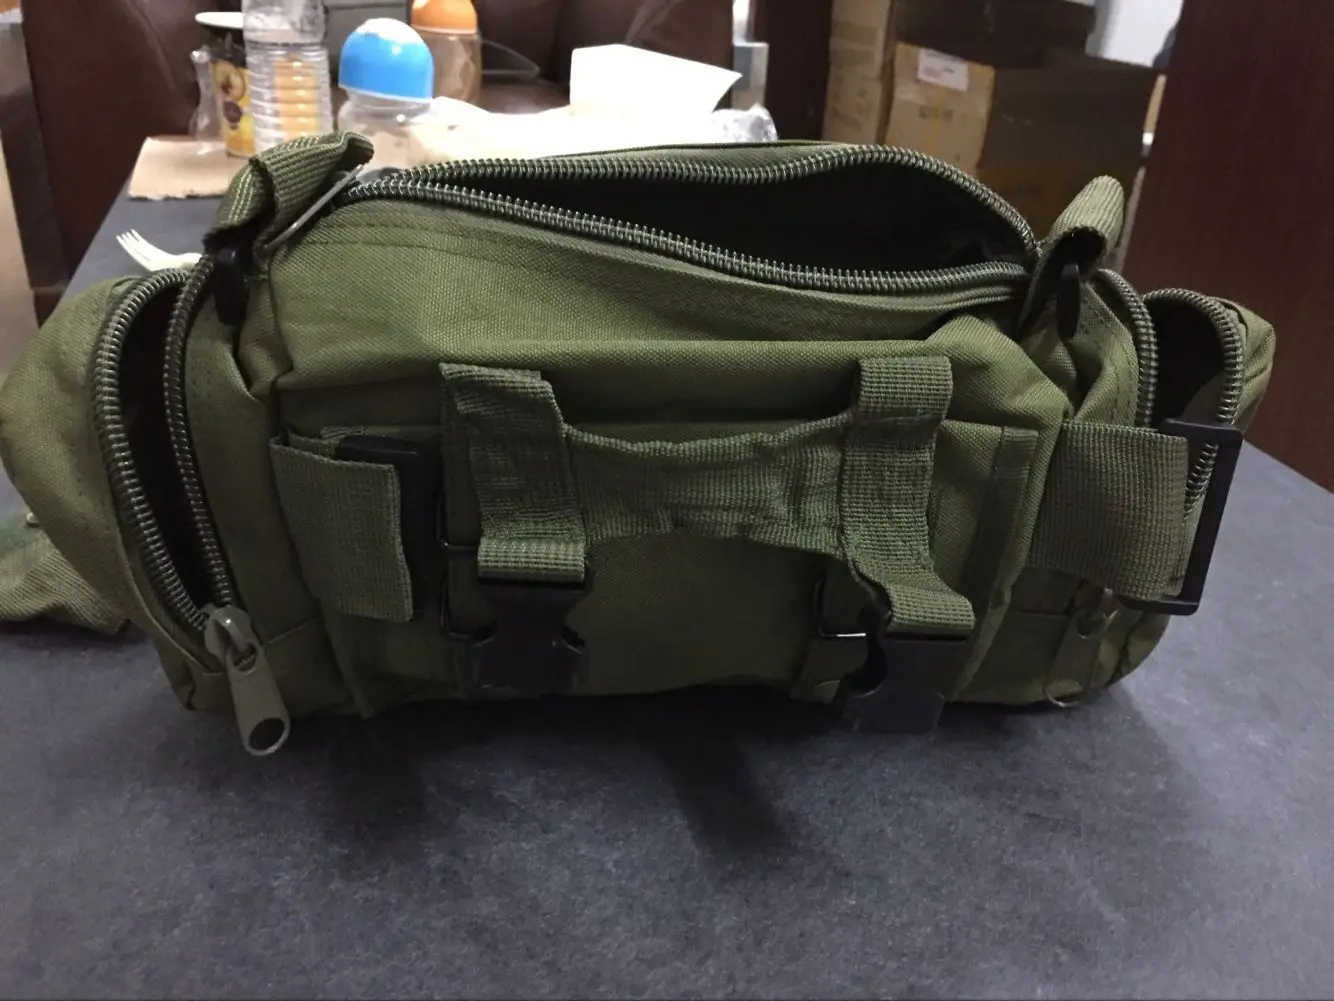 Новый Открытый Военная Униформа тактический Молл Нападение SLR рюкзак для фотоаппарата чемодан Duffle вести Путешествия Отдых пеший Туризм